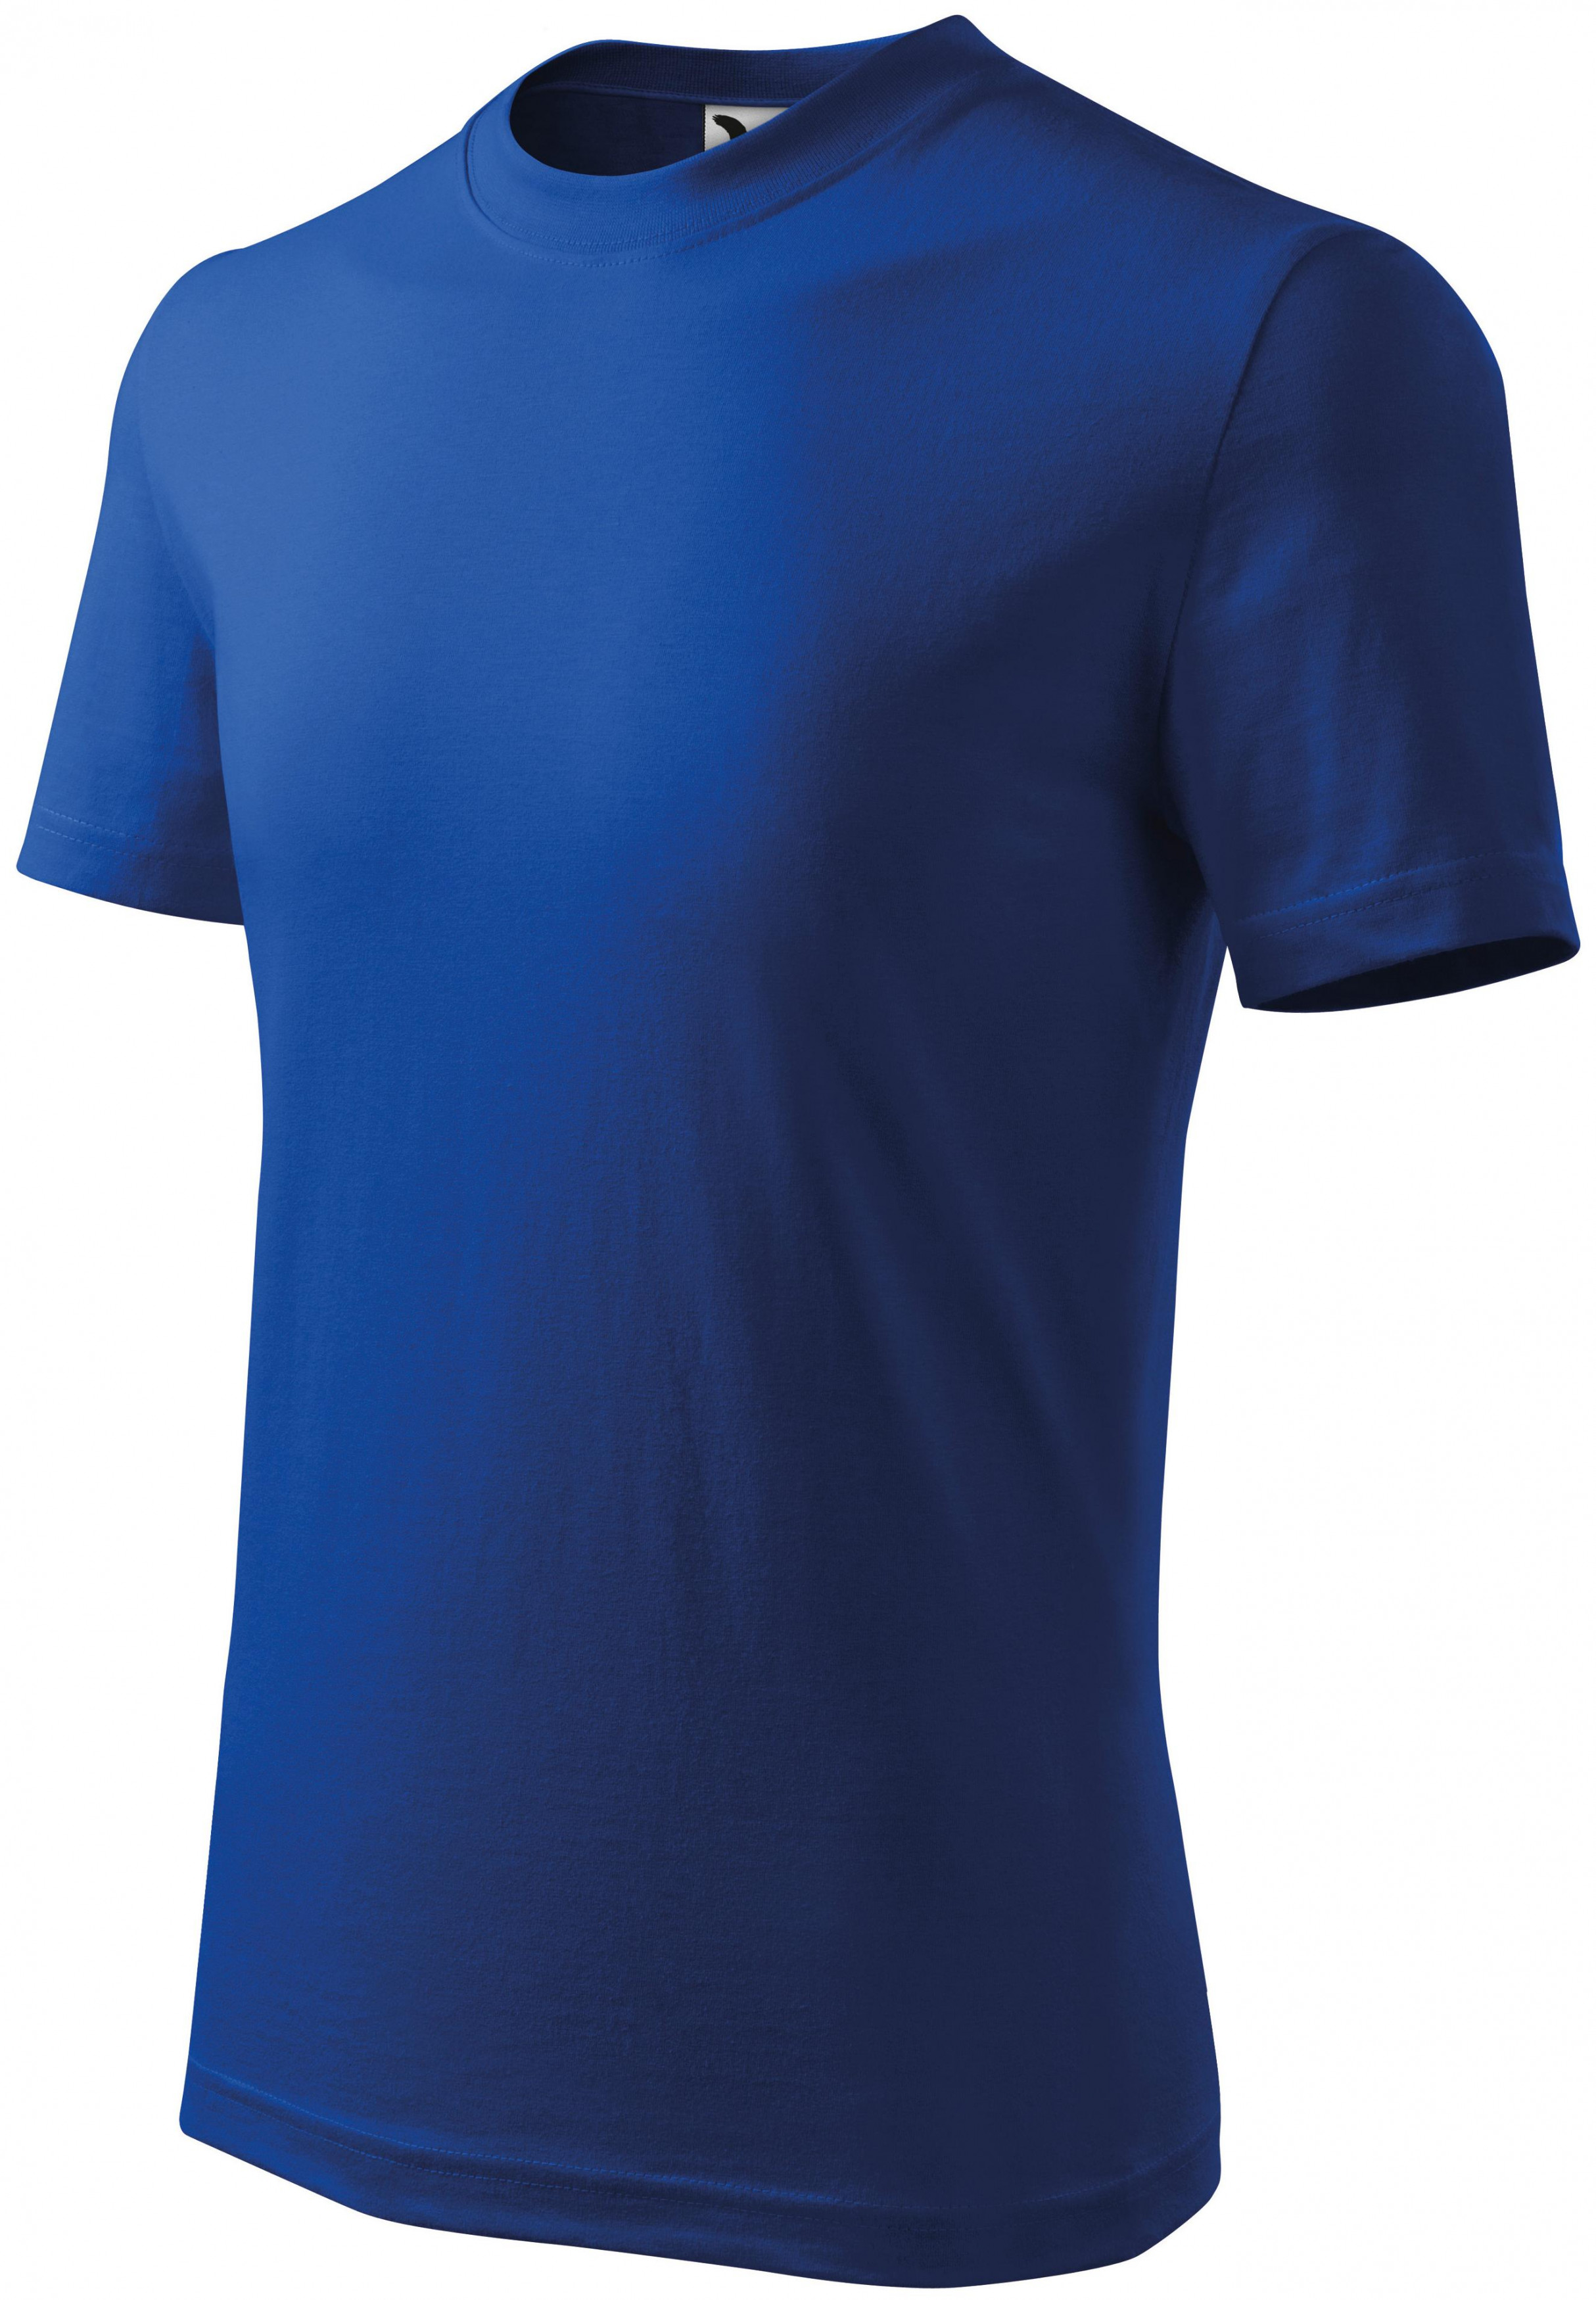 Detské tričko klasické, kráľovská modrá, 146cm / 10rokov